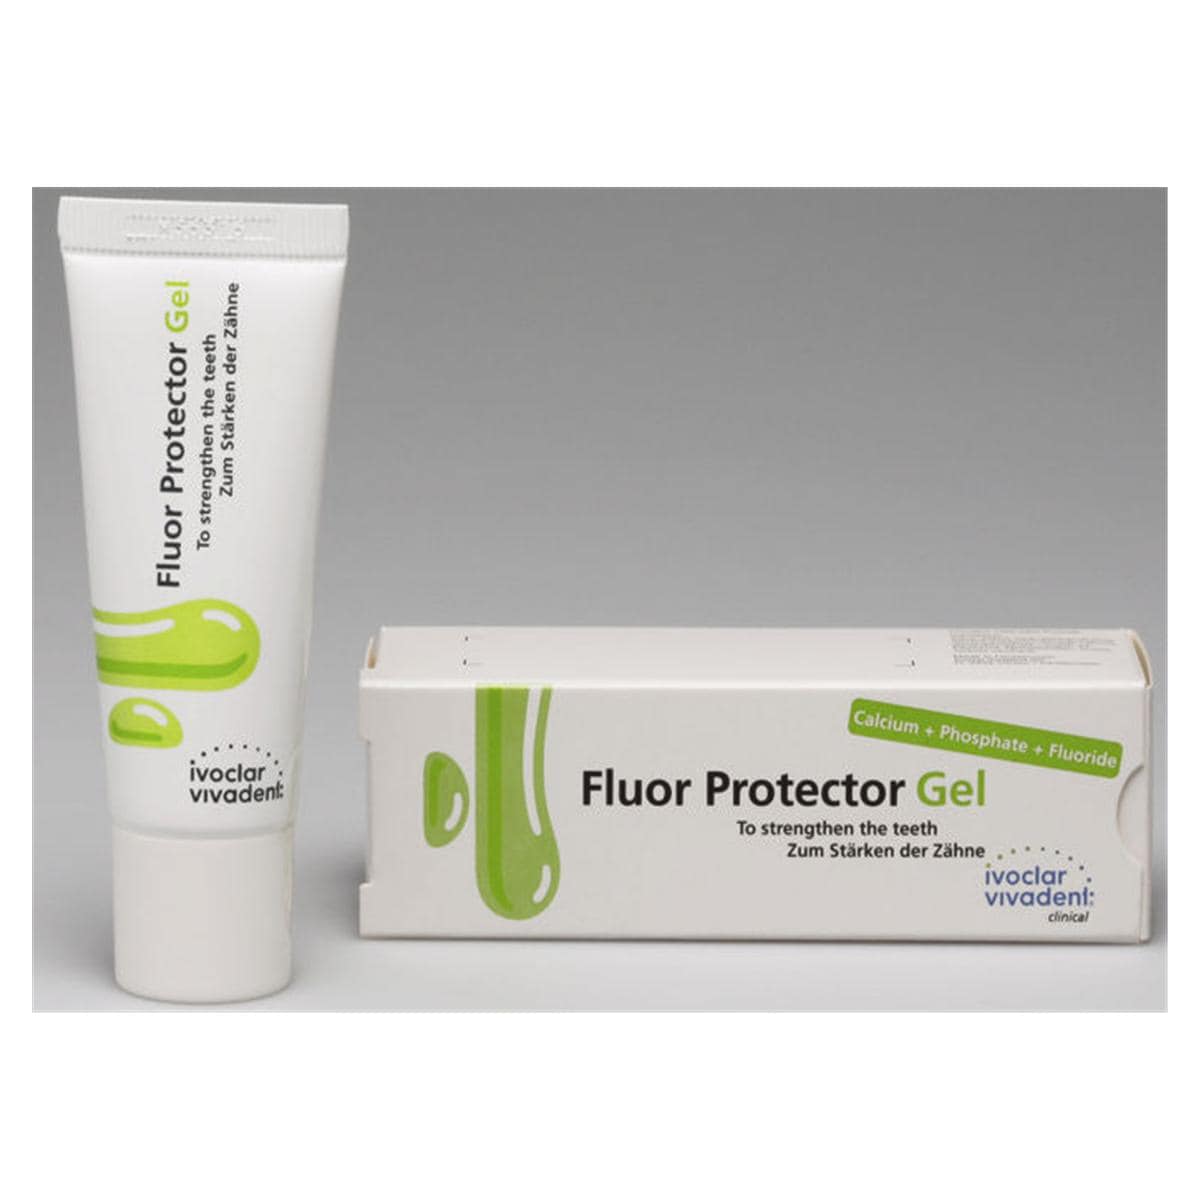 Fluor Protector - Gel - Tube, 50 g